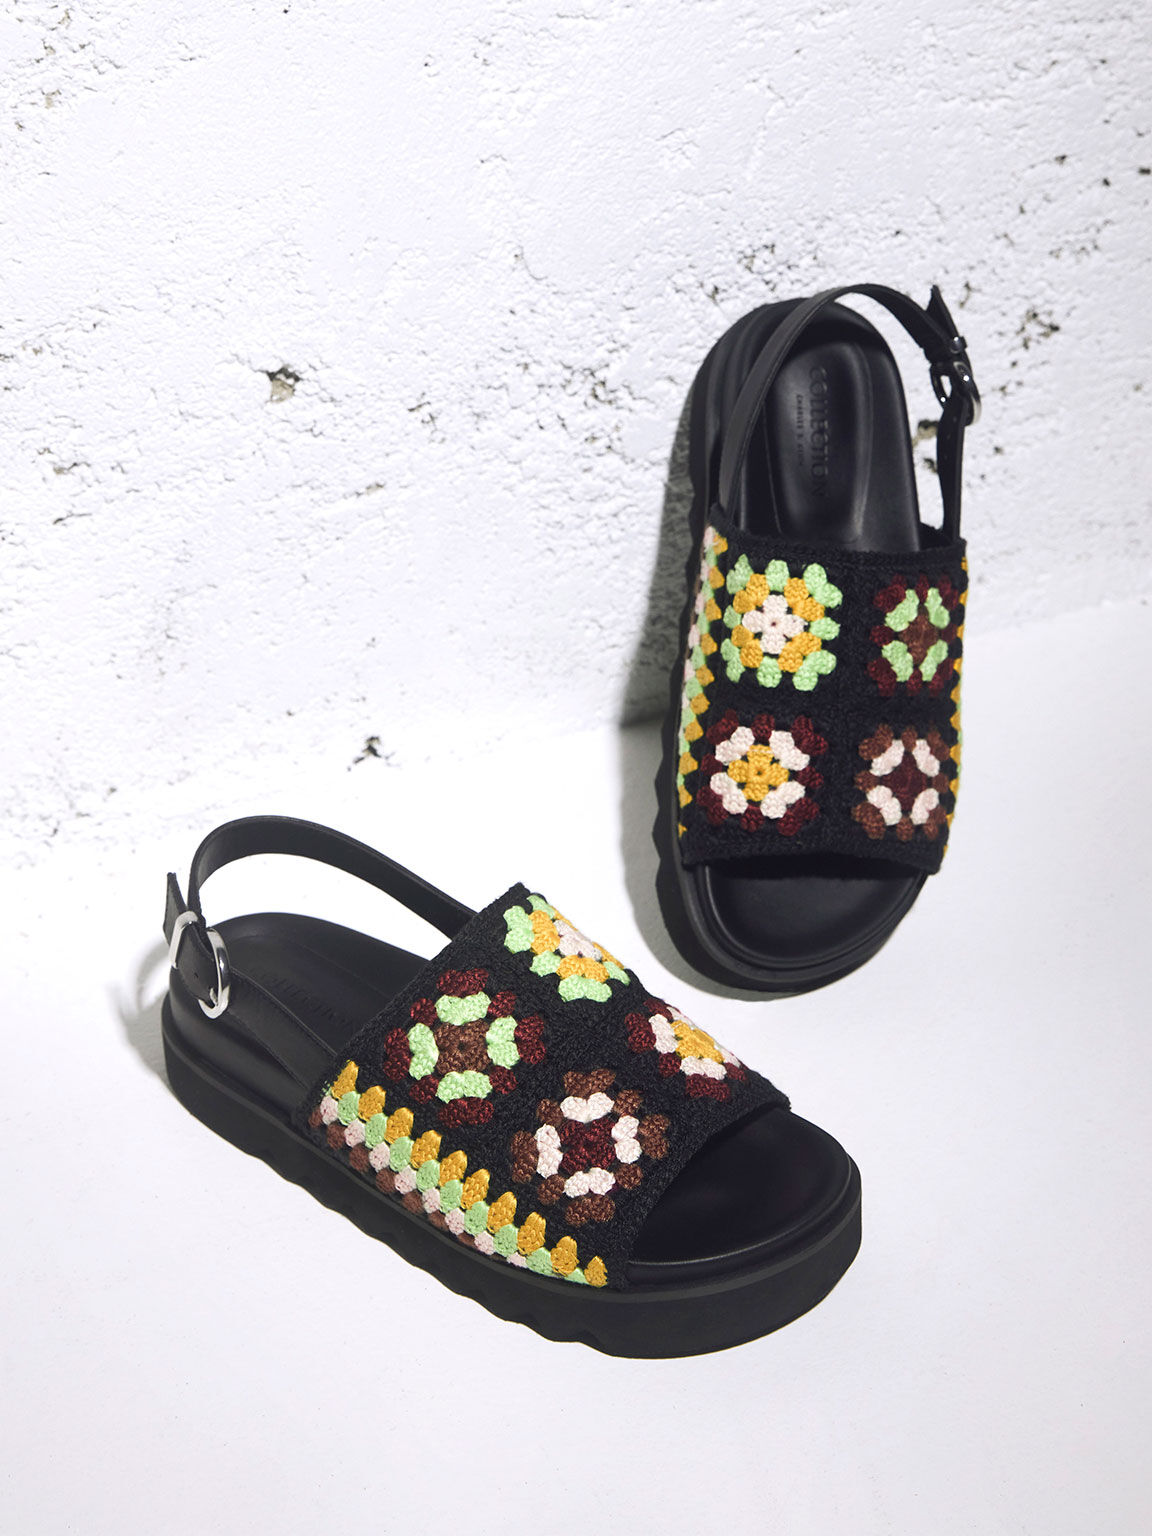 Crochet & Leather Floral Slingback Sandals, Multi, hi-res